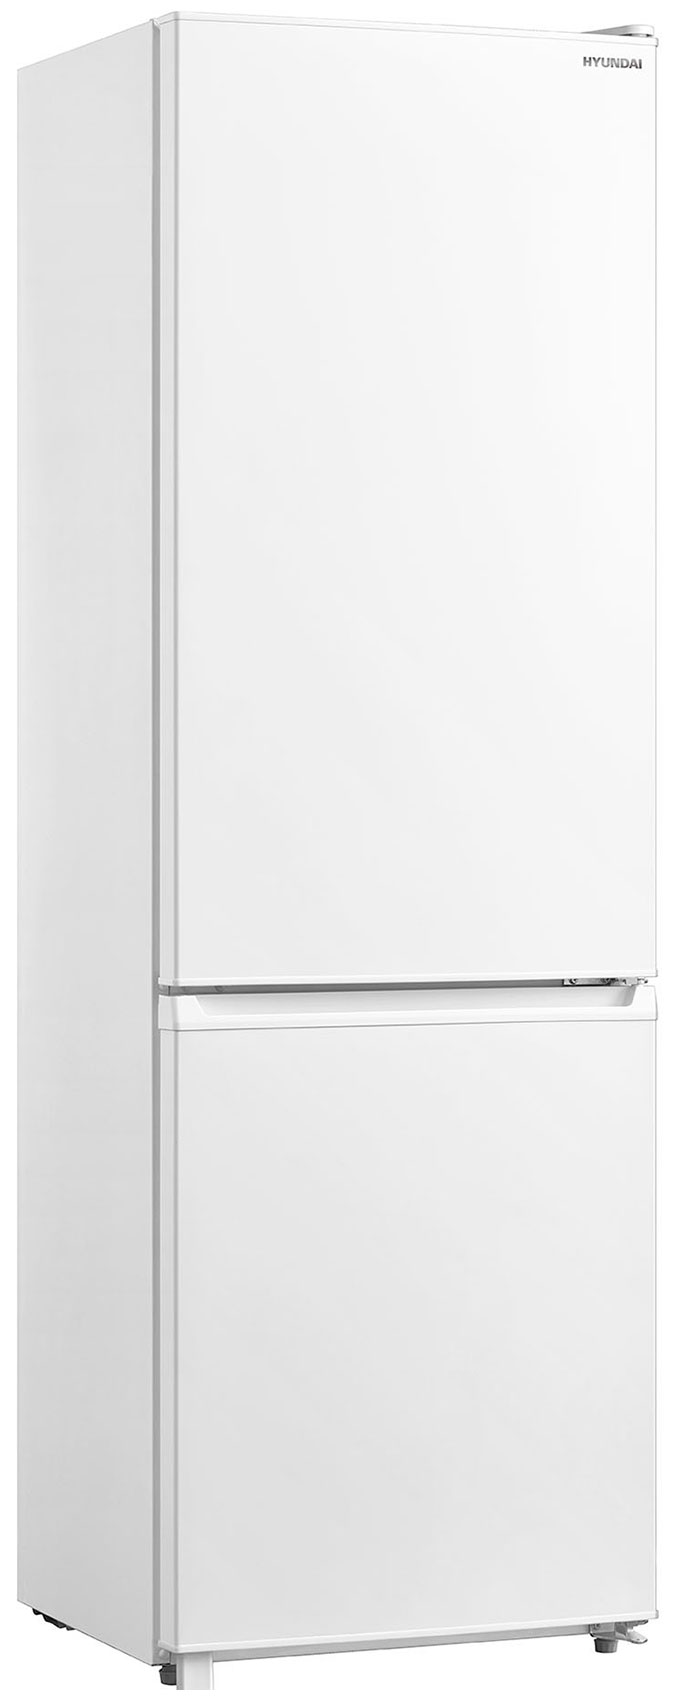 Двухкамерный холодильник Hyundai CC3091LWT белый фото